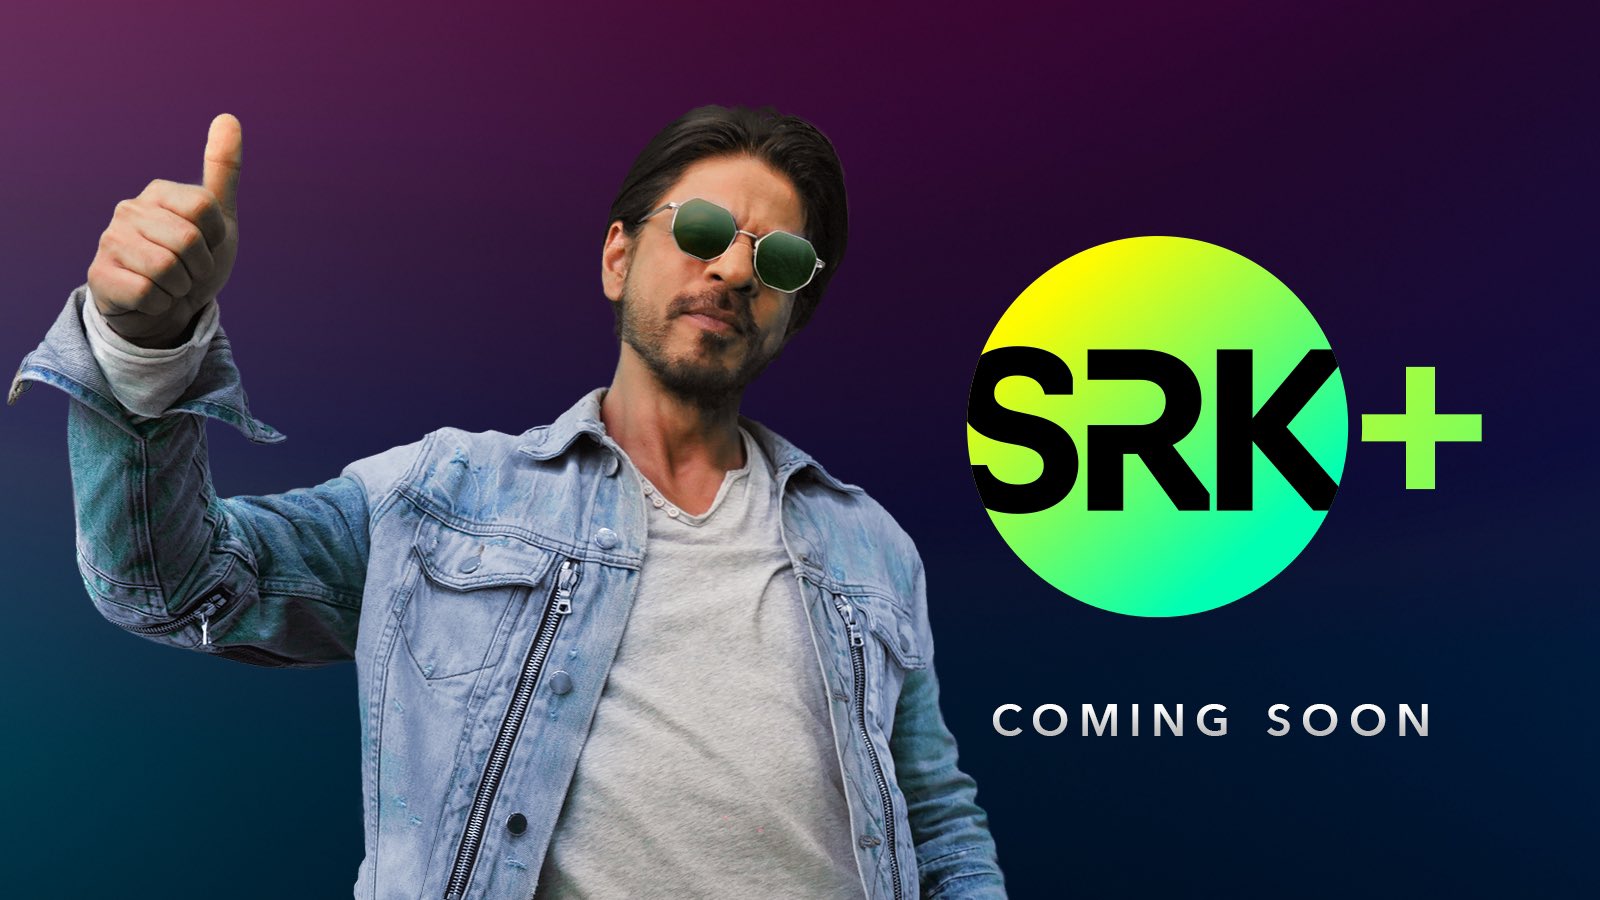 Shah Rukh announces his OTT platform SRK+, says kuch kuch hone wala hai